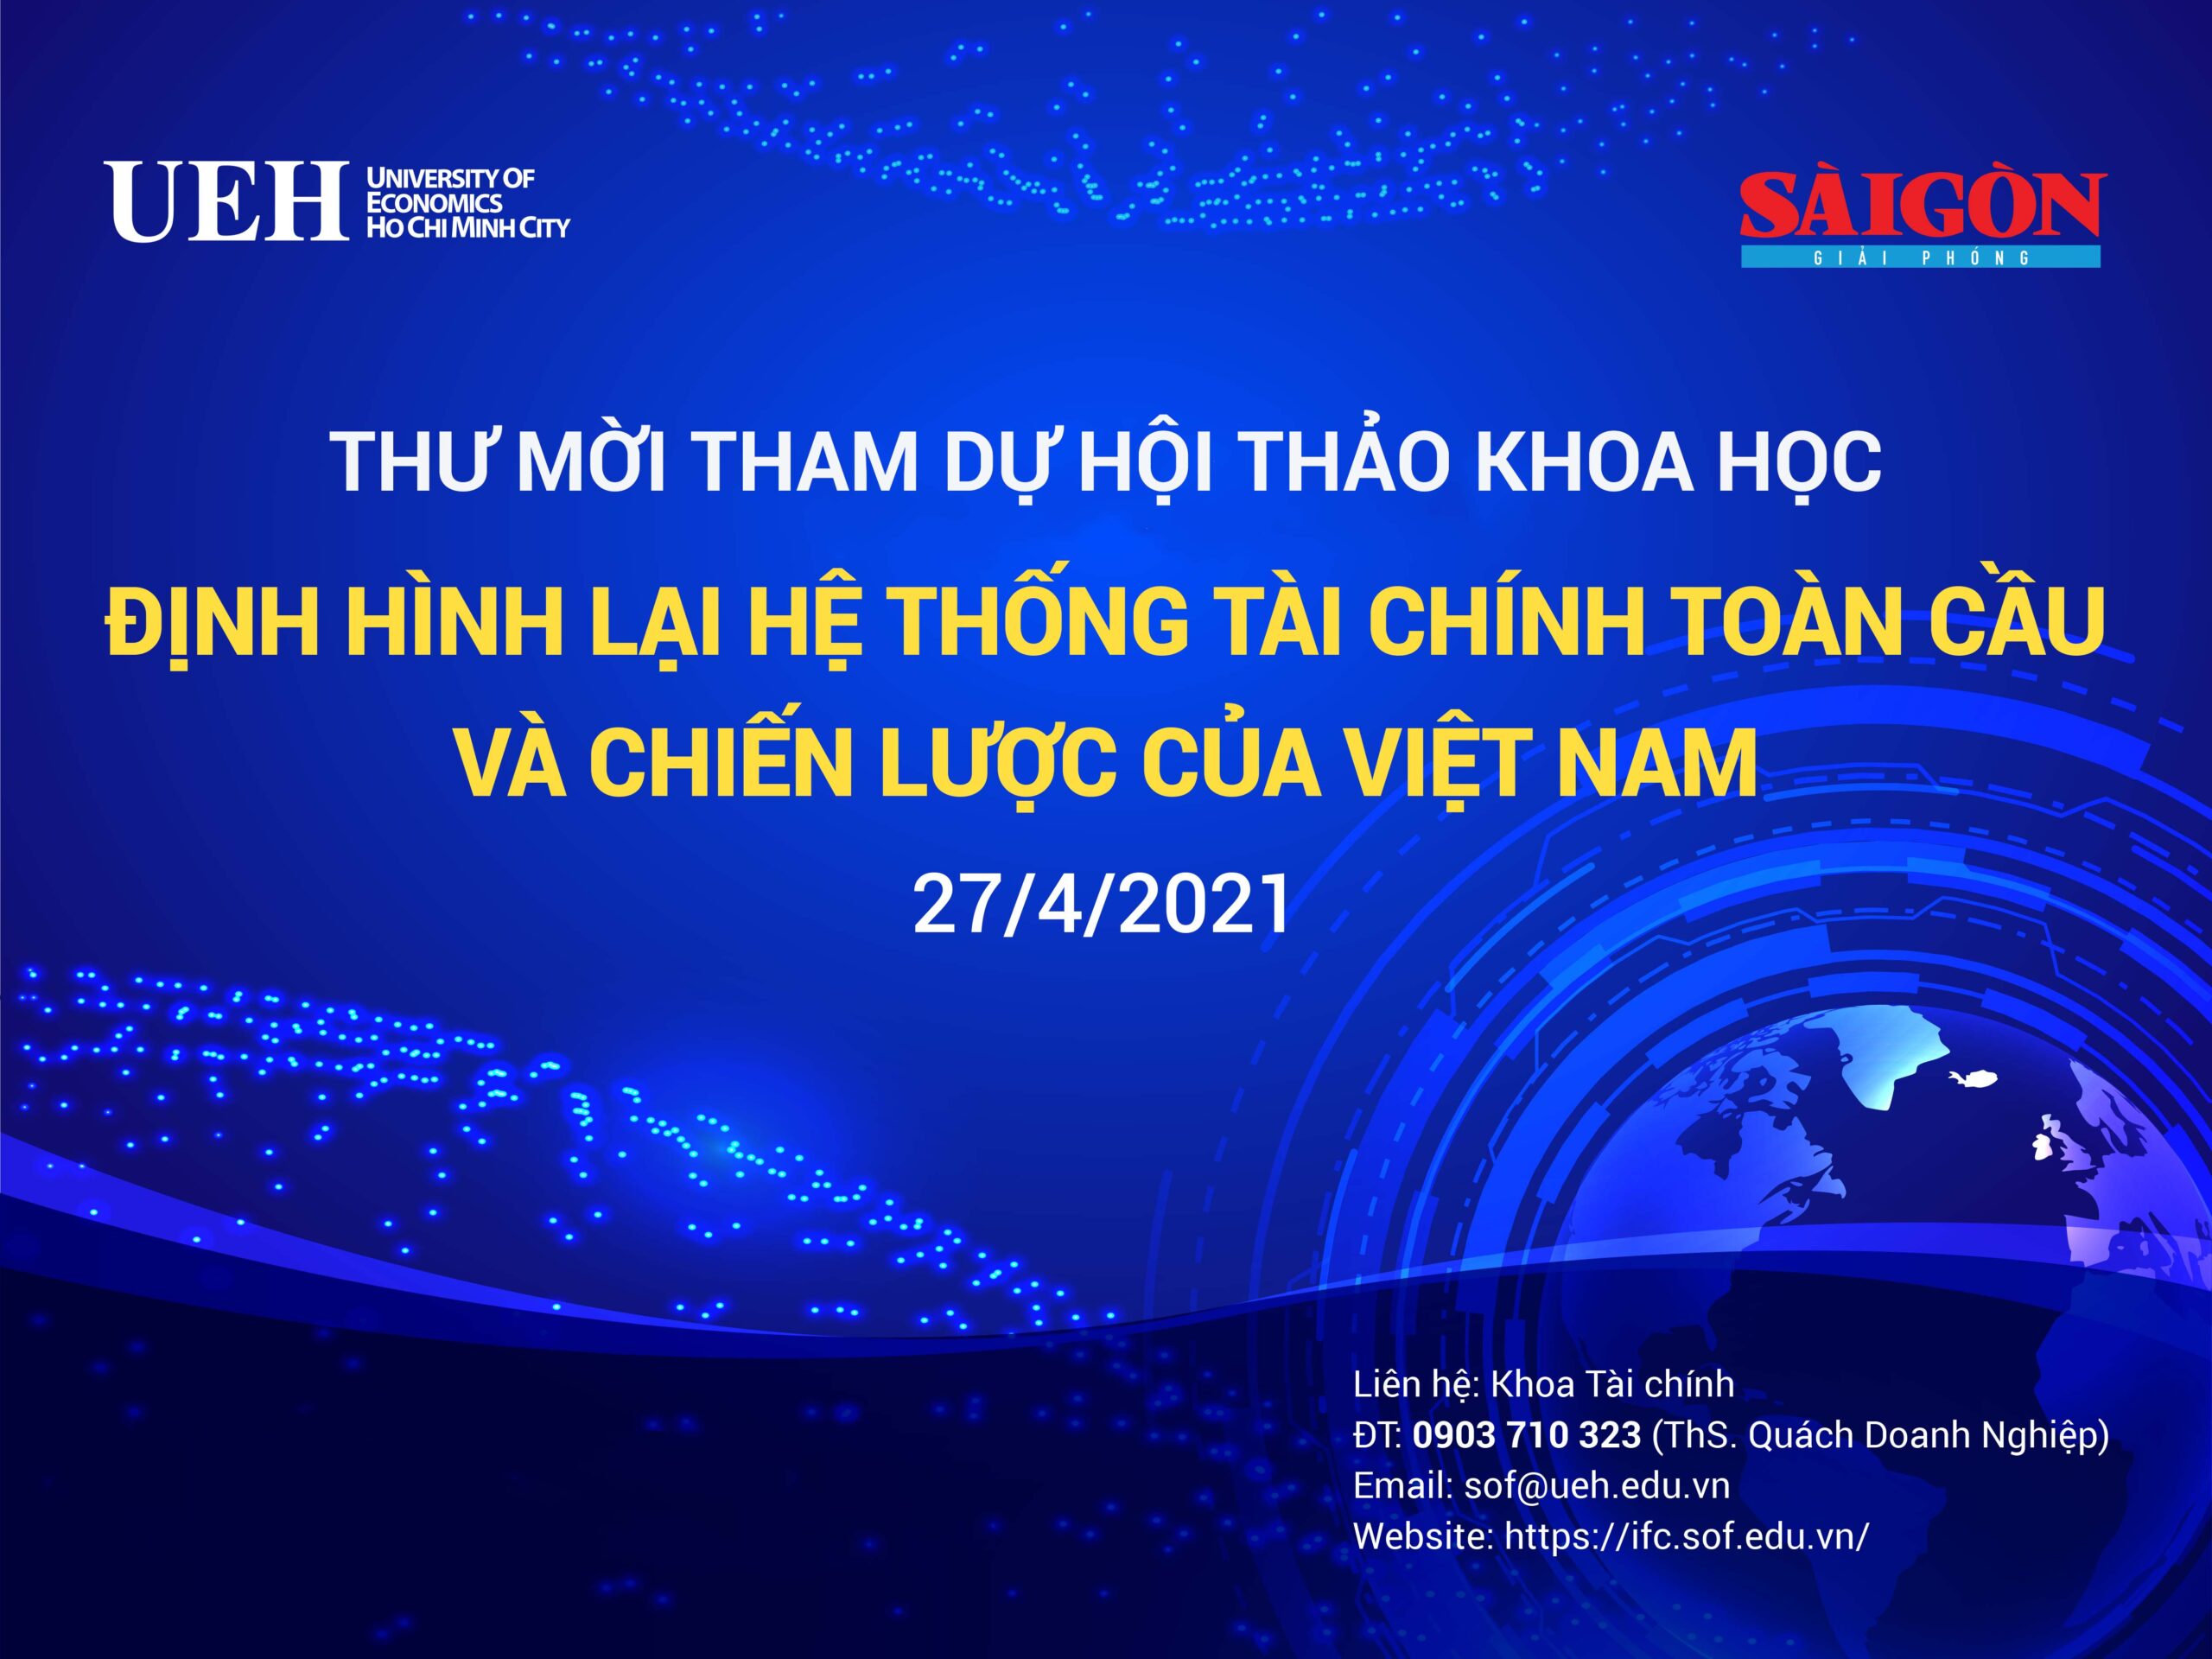 Thư mời tham dự Hội thảo khoa học “Định hình lại hệ thống tài chính toàn cầu và chiến lược của Việt Nam”